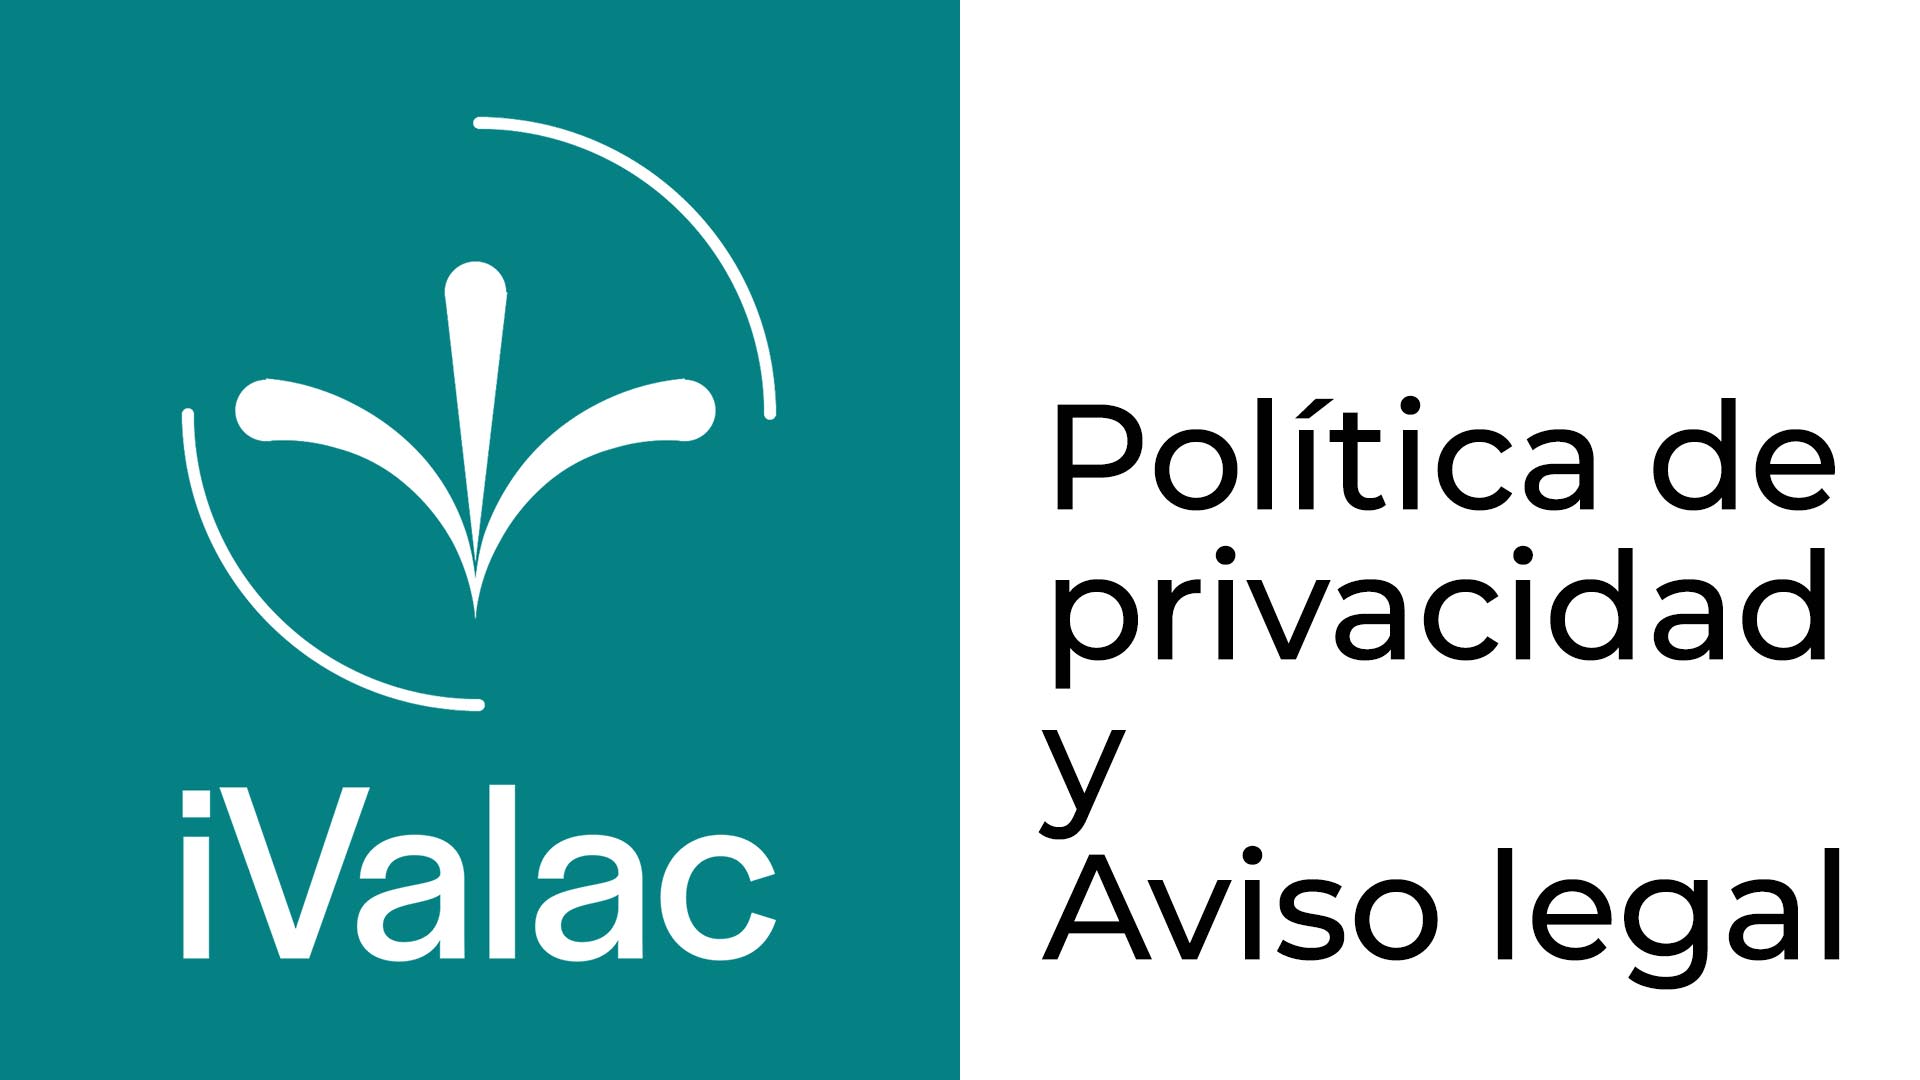 Aviso legal y política de privacidad